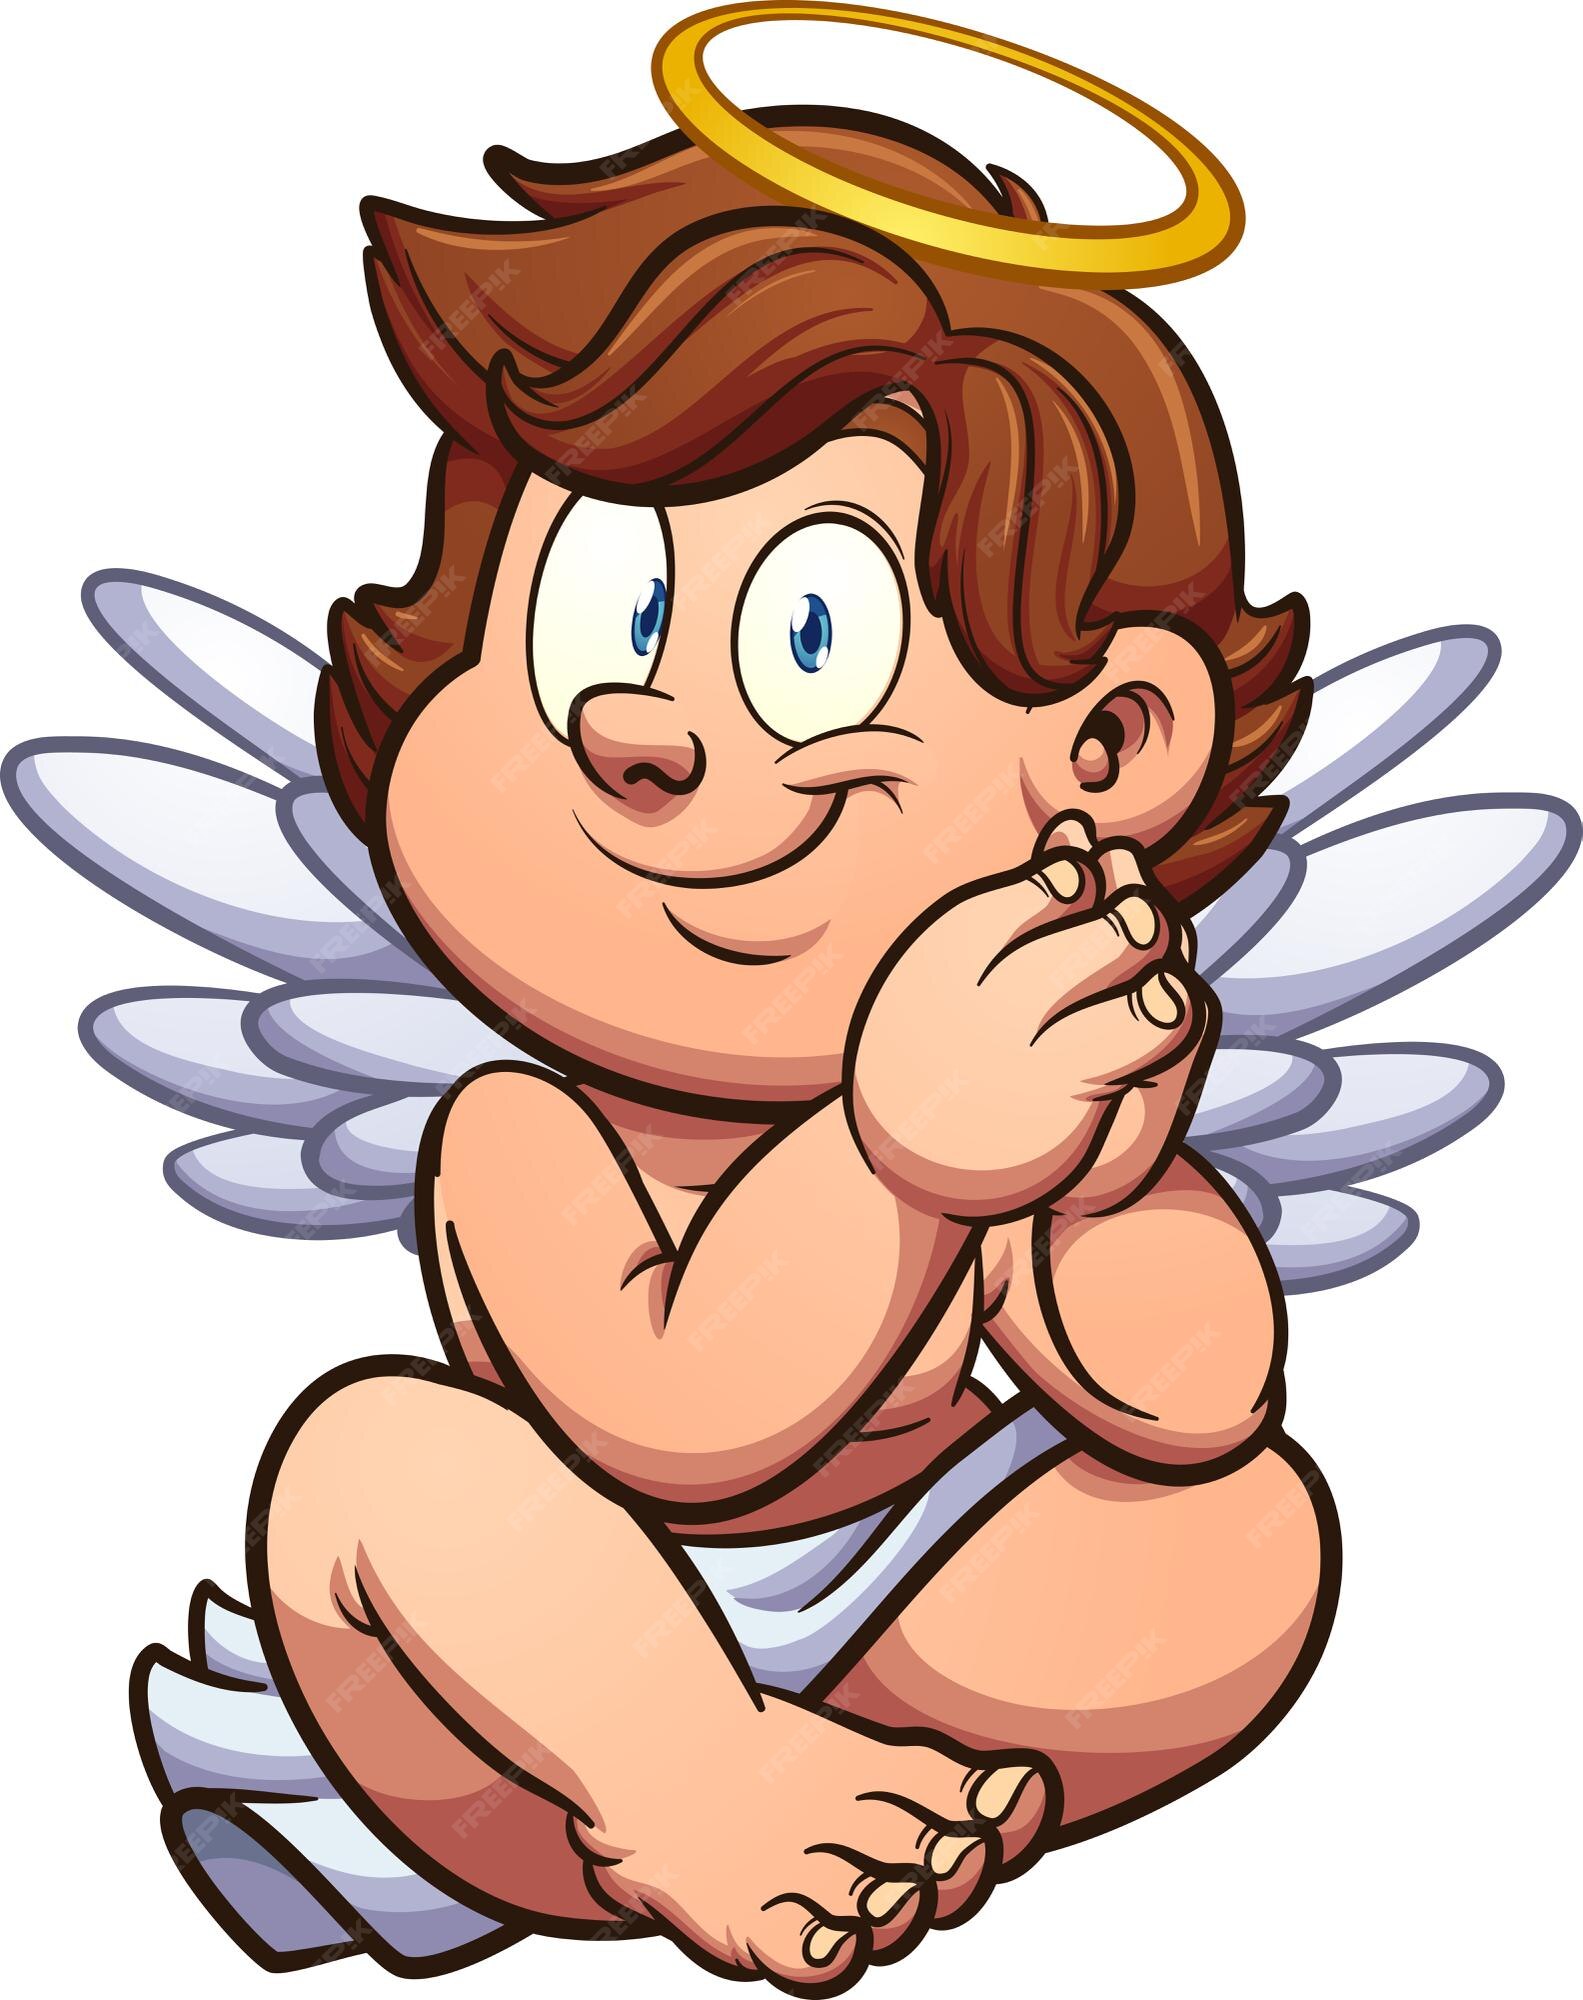 Premium Vector | Cute cartoon angel or cherub sitting down